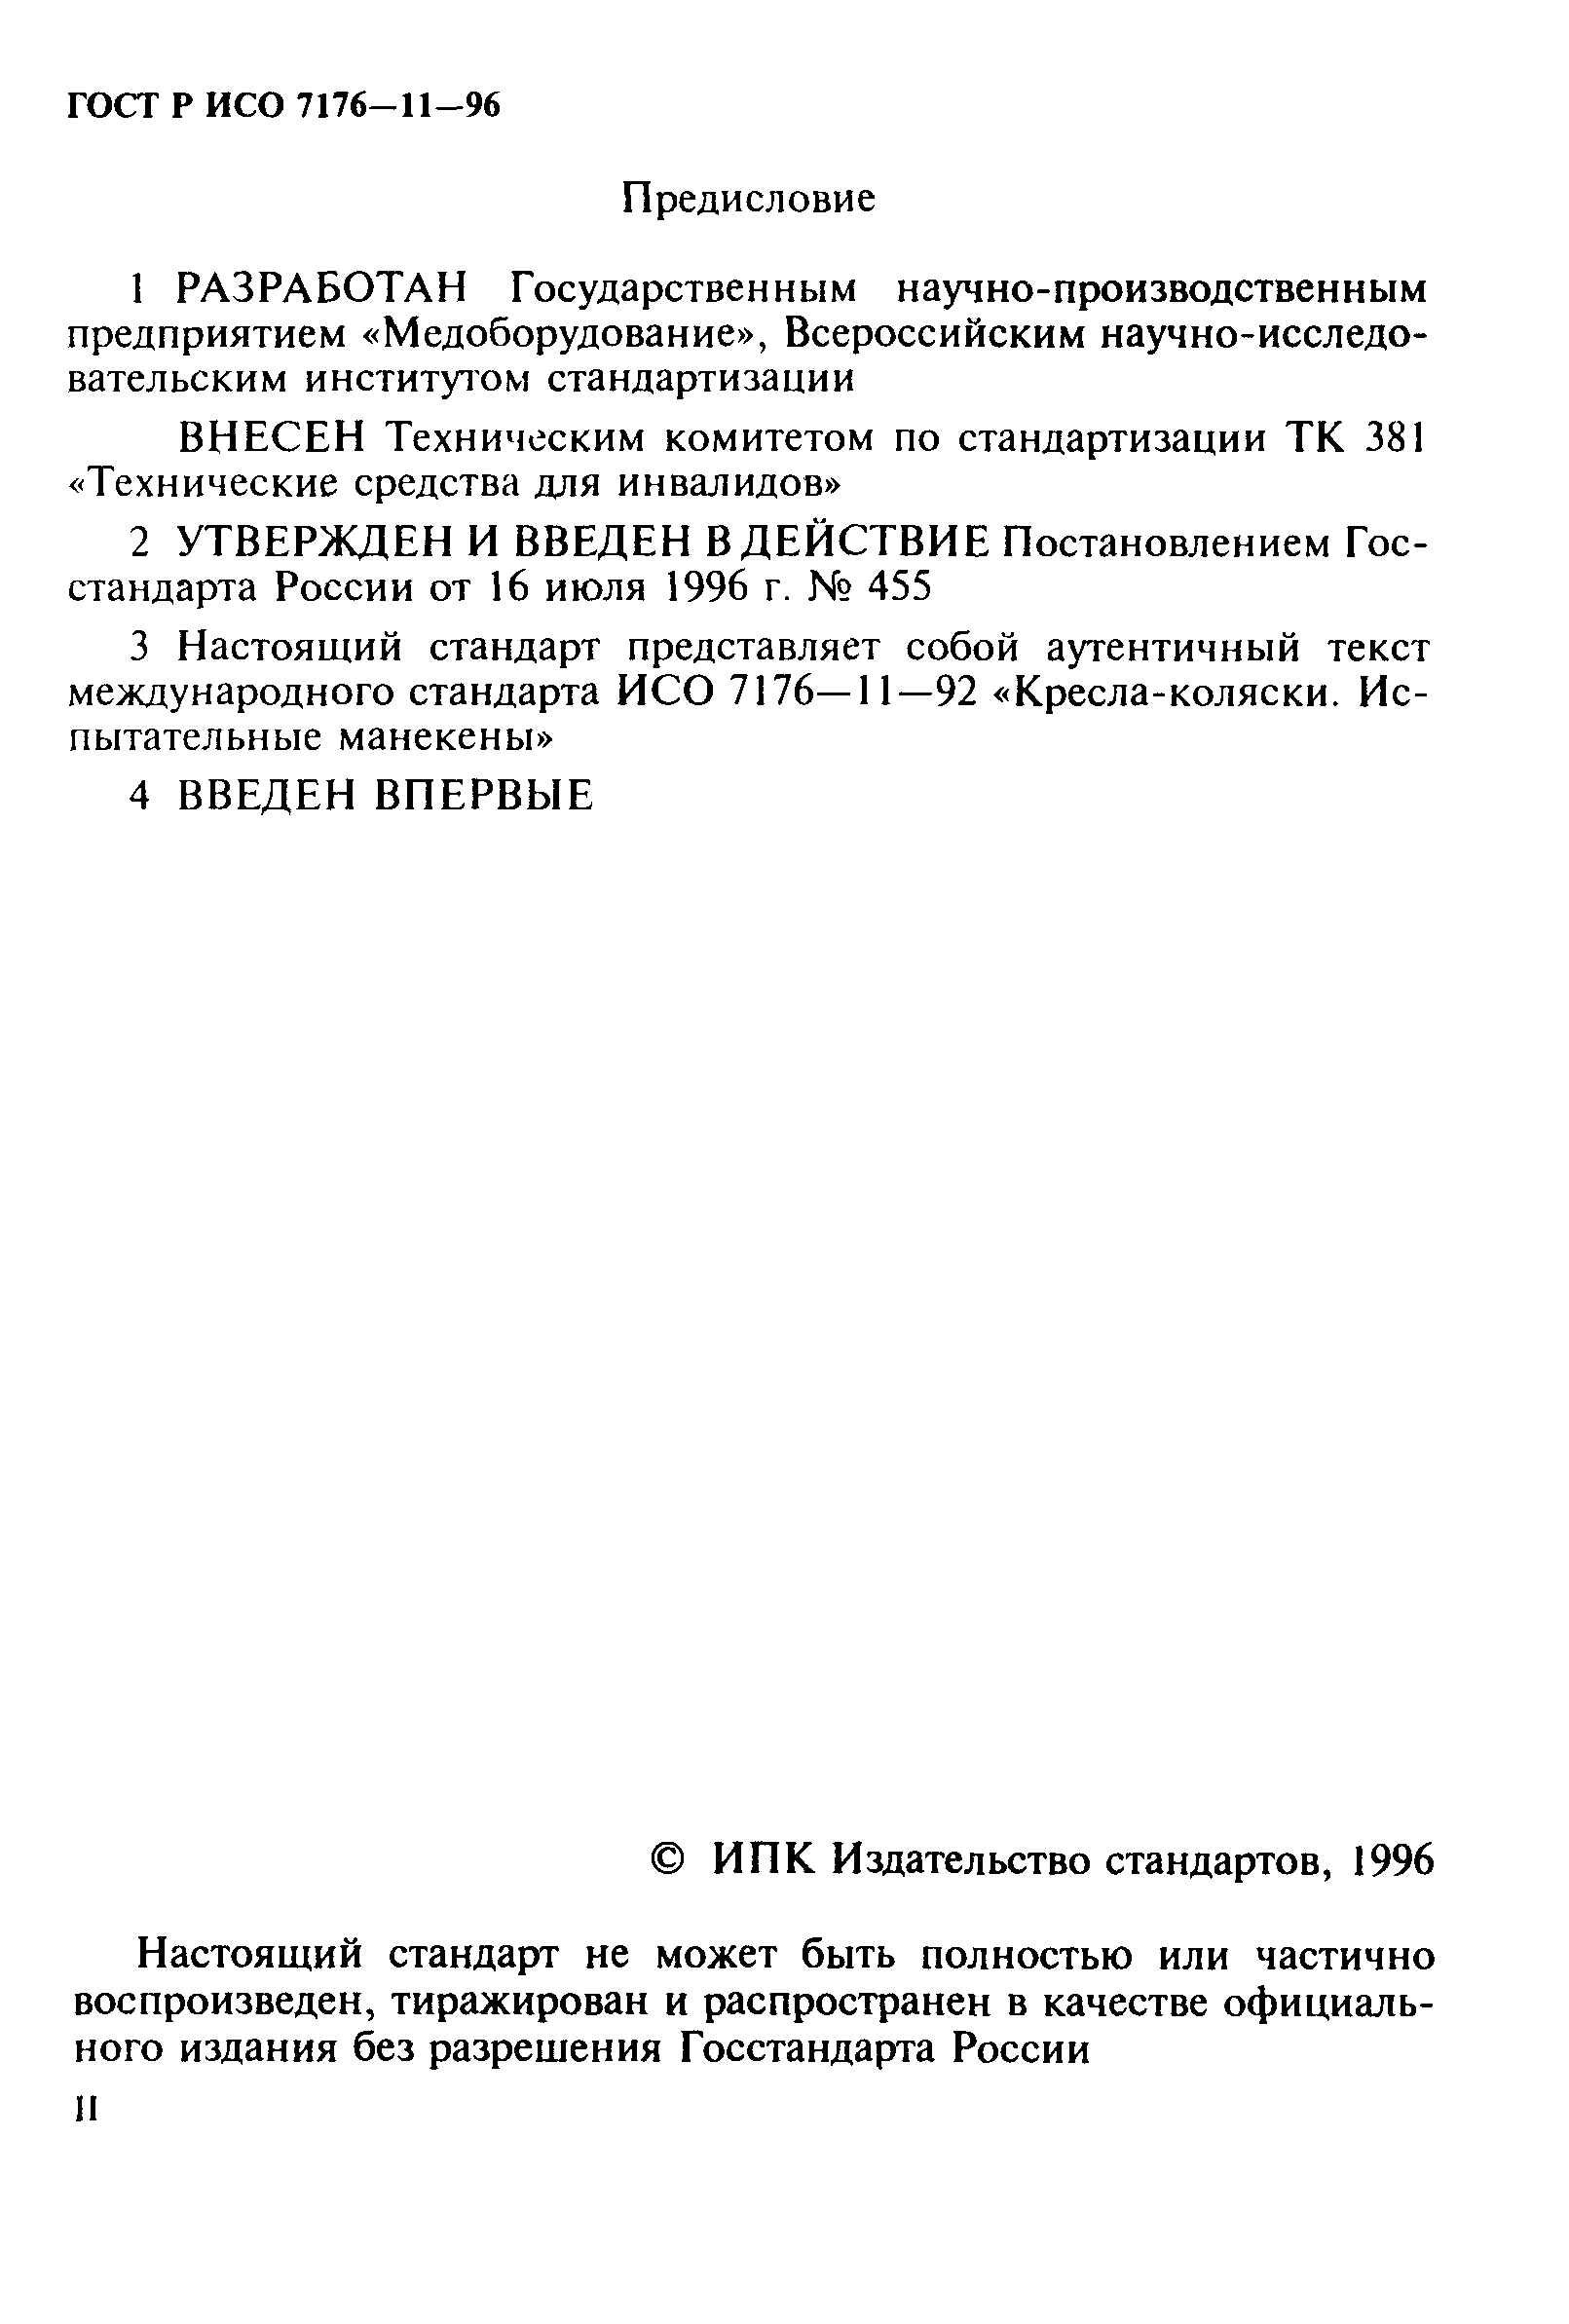 ГОСТ Р ИСО 7176-11-96